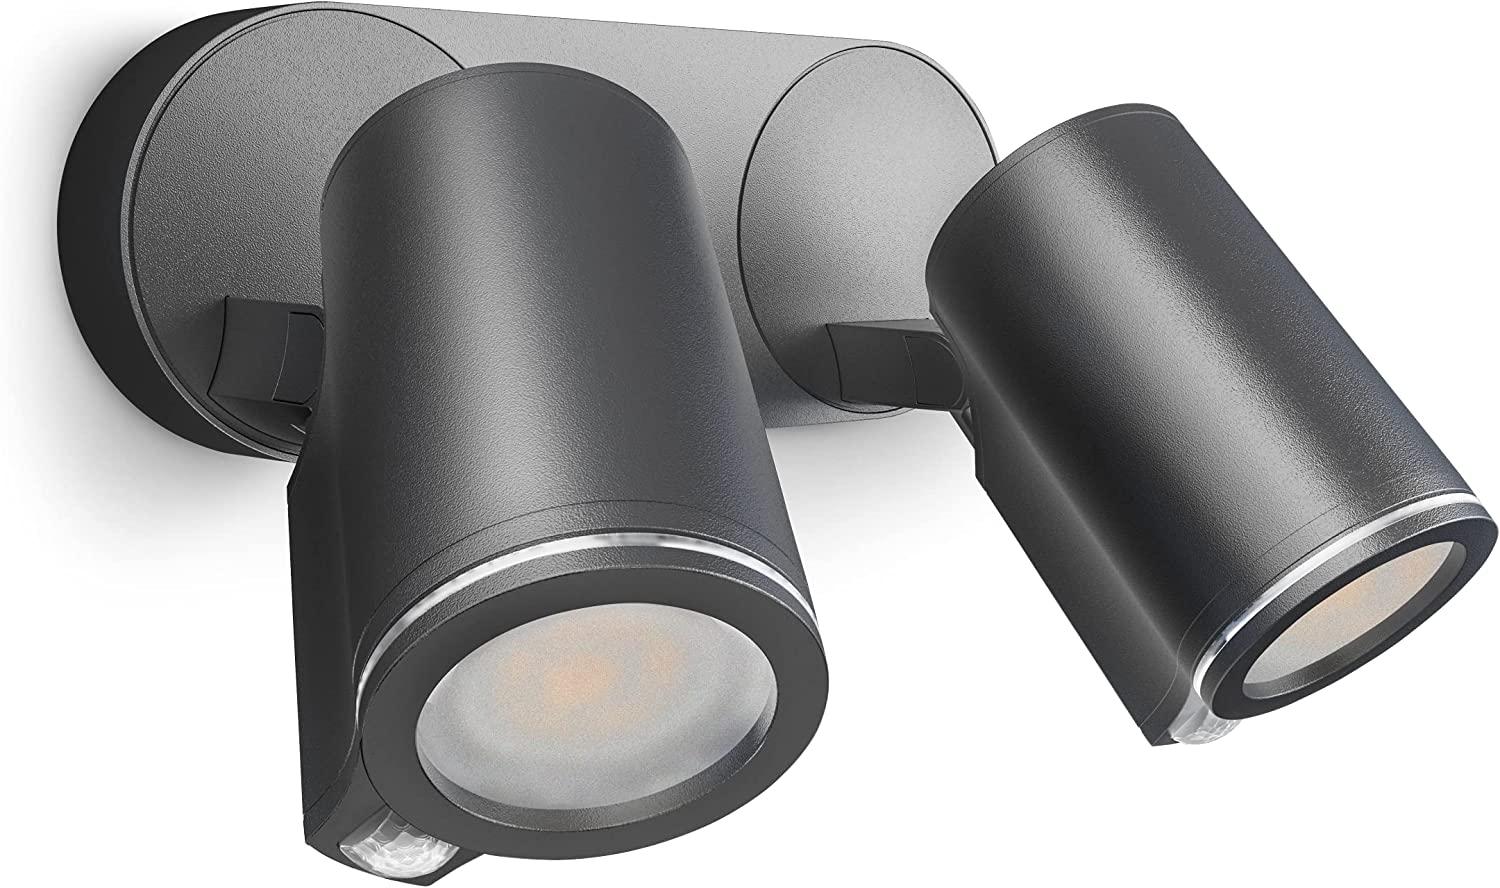 LED-Außenwandstrahler Spot DUO SC anthrazit, mit 90° Bewegungsmelder, 2-flammig, vernetzbar, per App bedienbar, inkl. GU10-Leuchtmittel, Aluminium, 14,6 W Bild 1